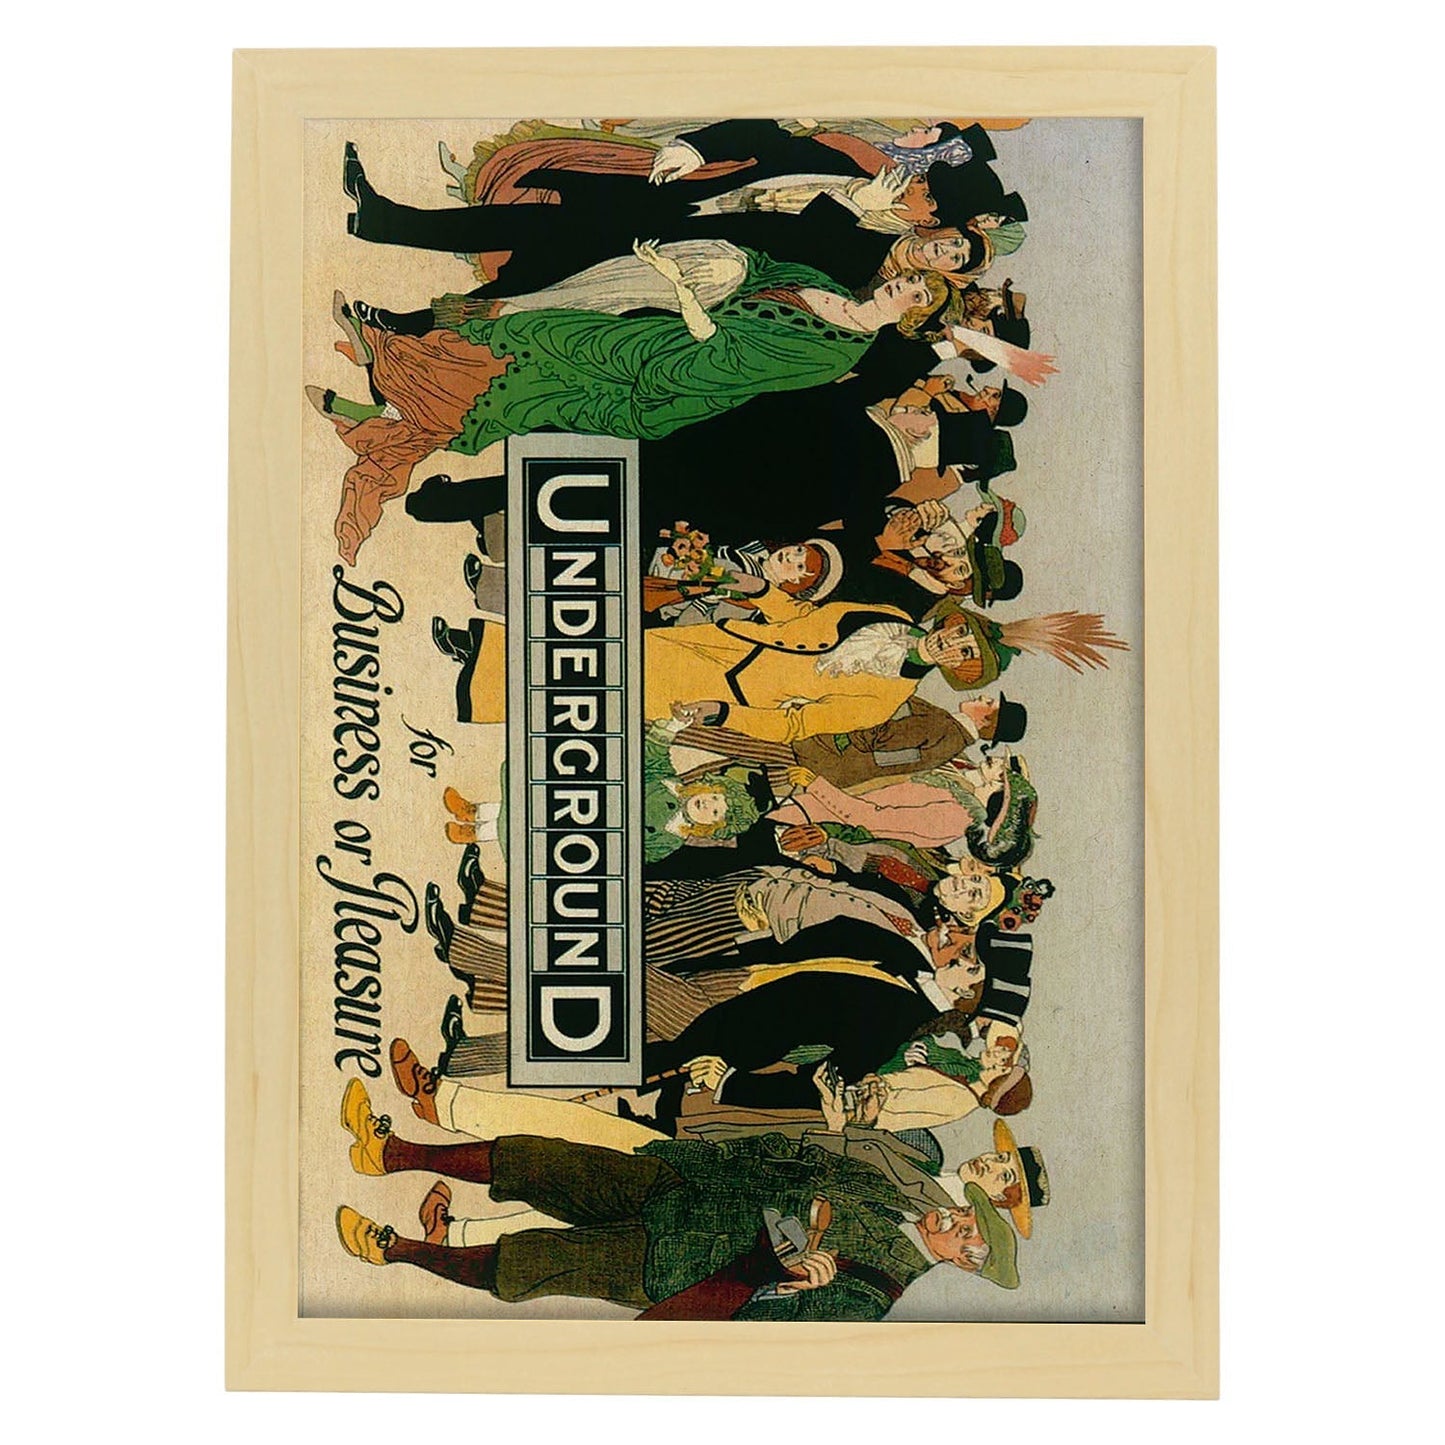 Poster vintage. Cartel vintage de Europa. Metro de Londres, 1913.-Artwork-Nacnic-A3-Marco Madera clara-Nacnic Estudio SL